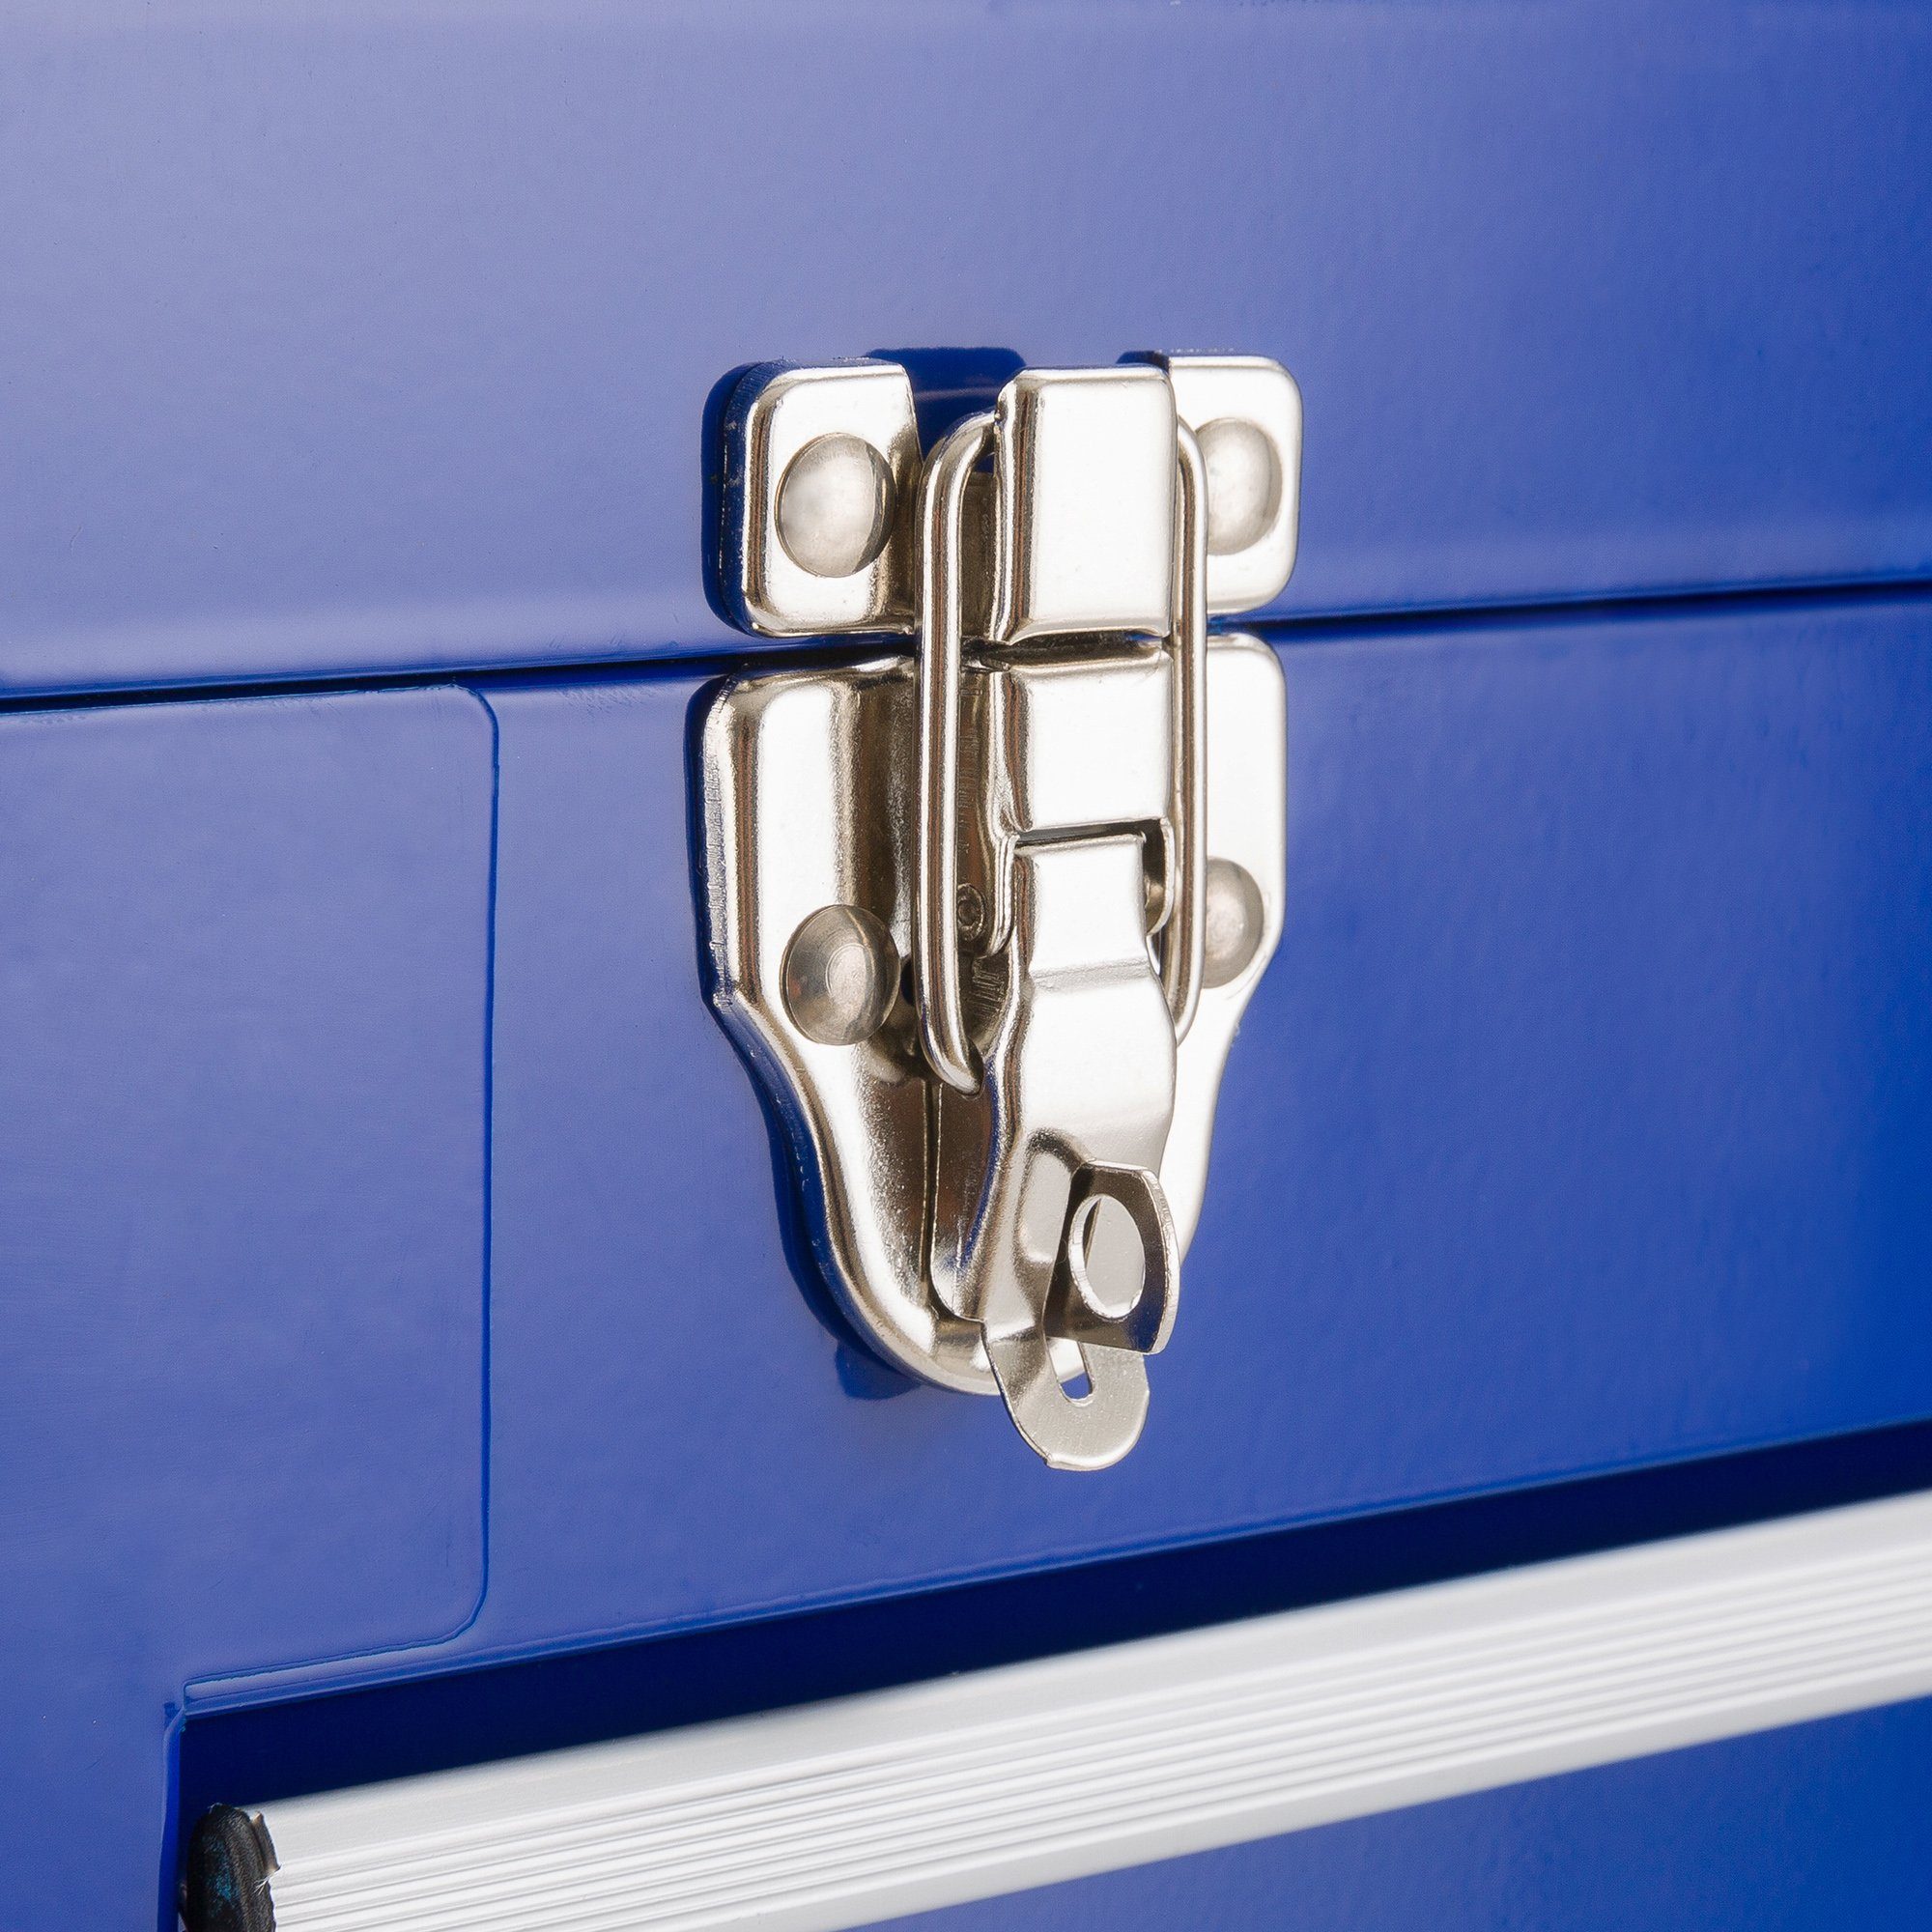 Werkzeugkoffer Schubladen 3 blau mit Arebos Ablagefächern 2 &